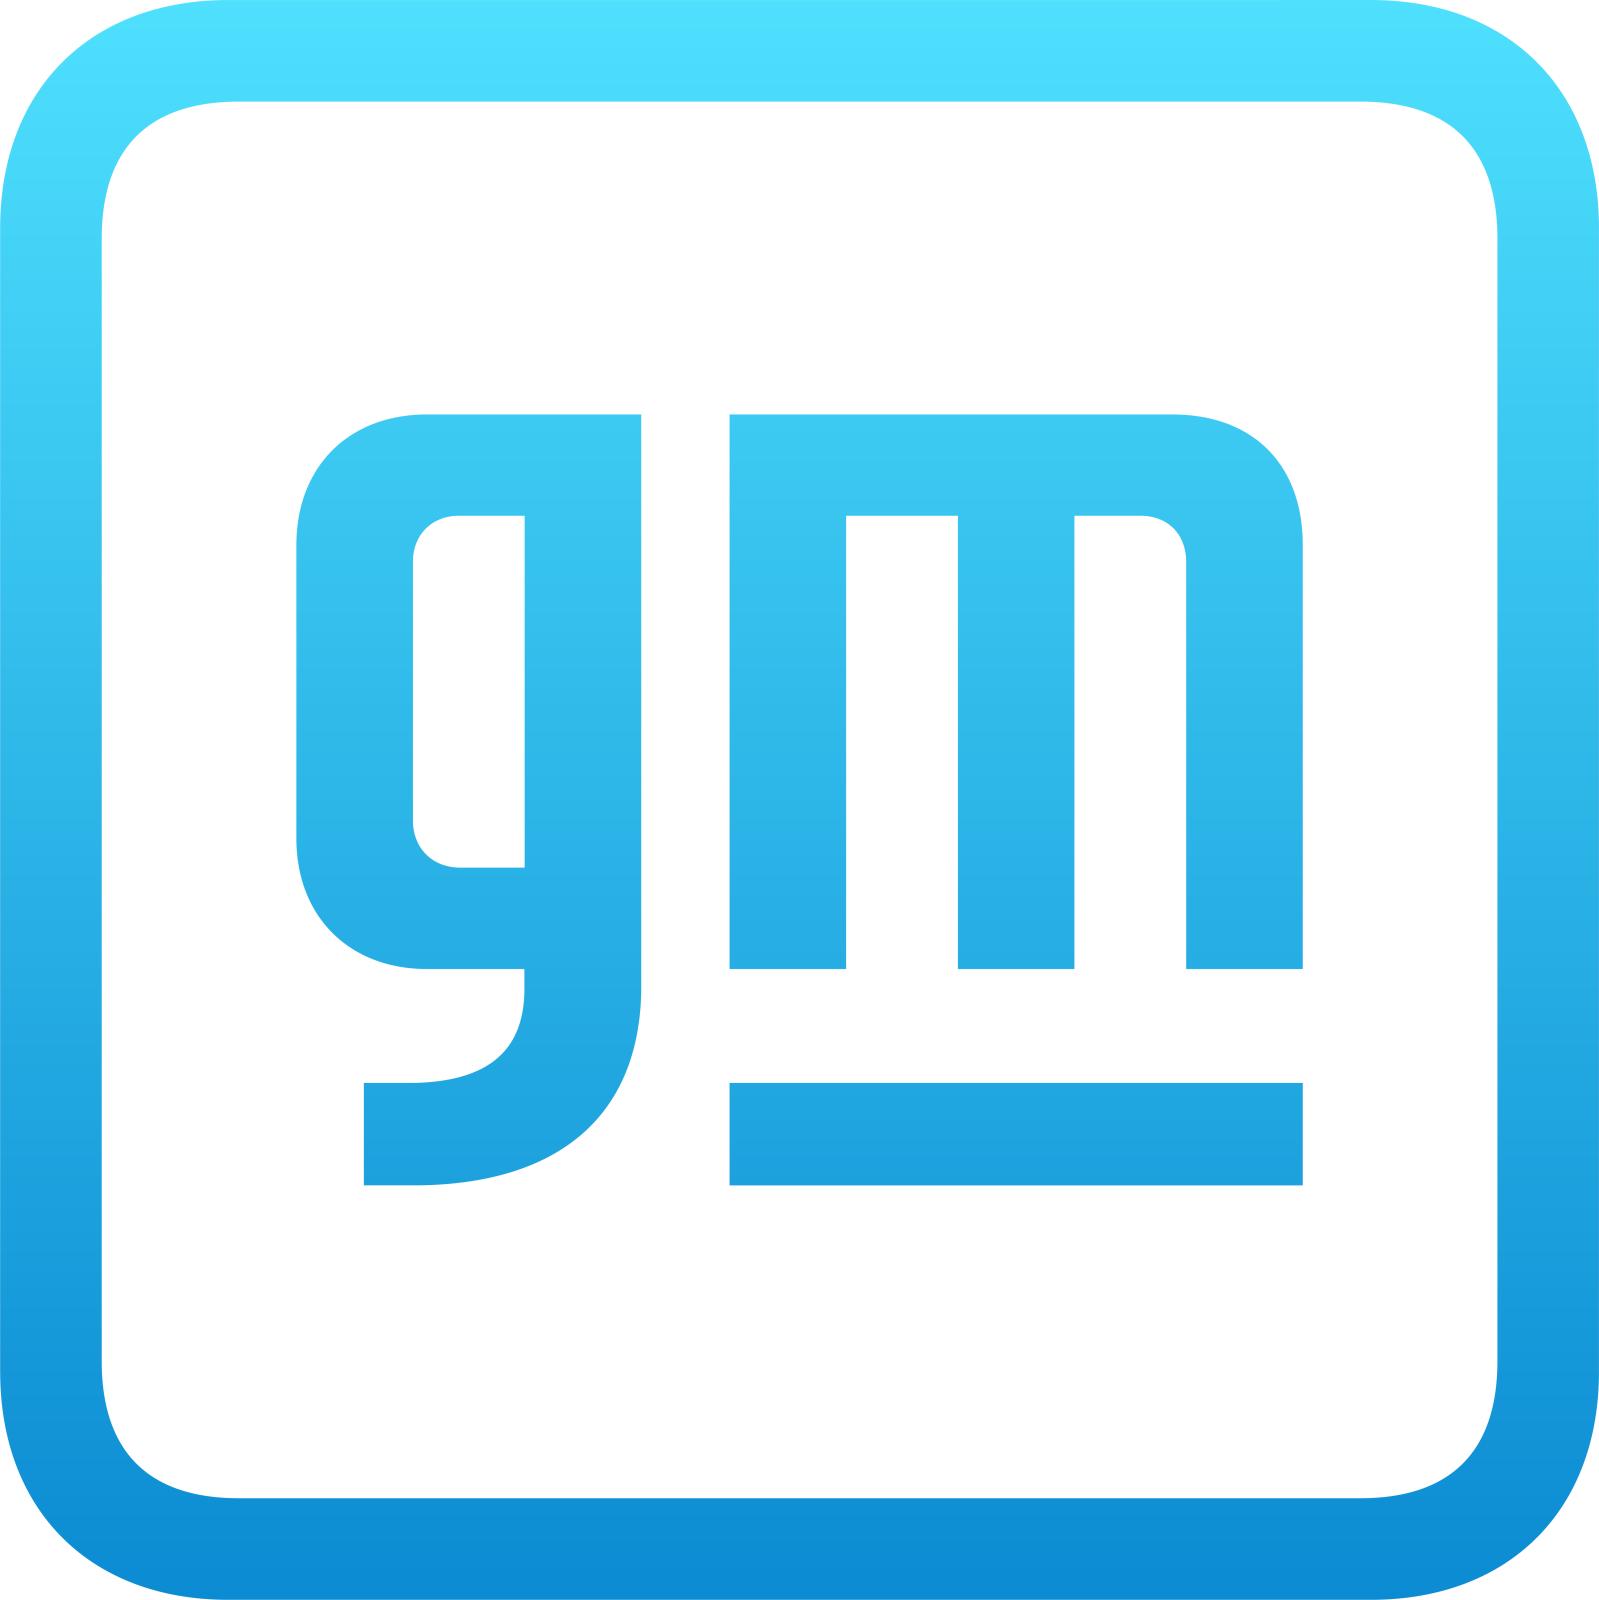 General Motors's Image